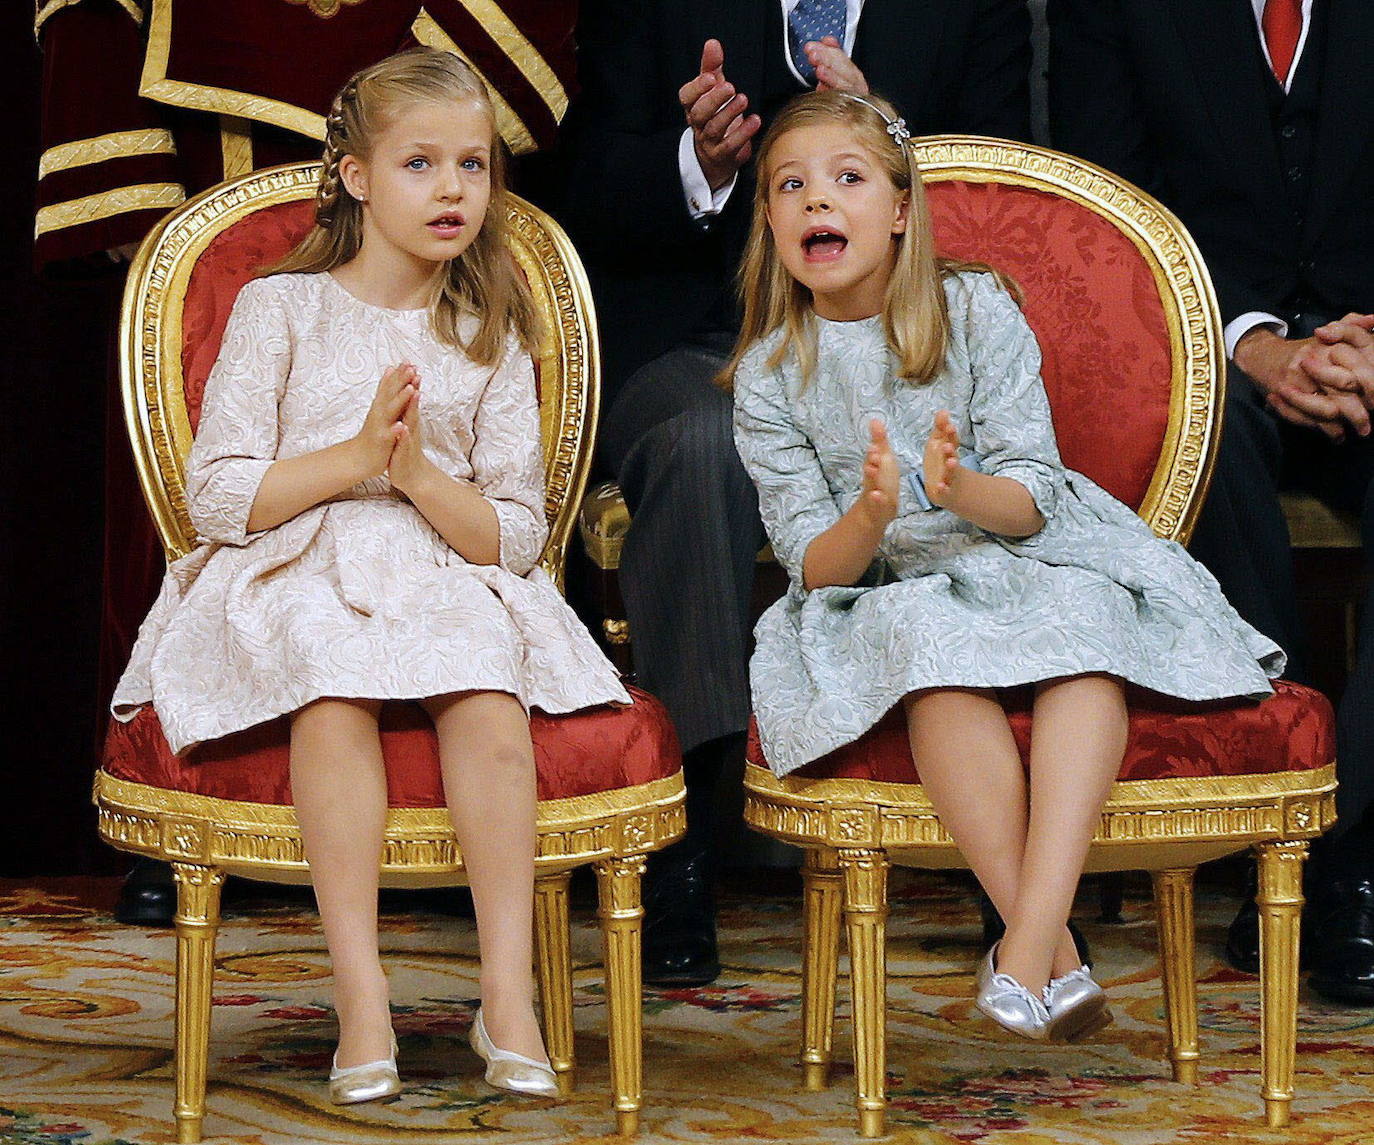 Acto de proclamación del Rey Felipe VI en el Congreso de los Diputados, el 19 de junio de 2014. La princesa Leonor y la infanta Sofía miran sorprendidas al reconocer entre los asistentes al acto a su abuela, la reina Sofía. 